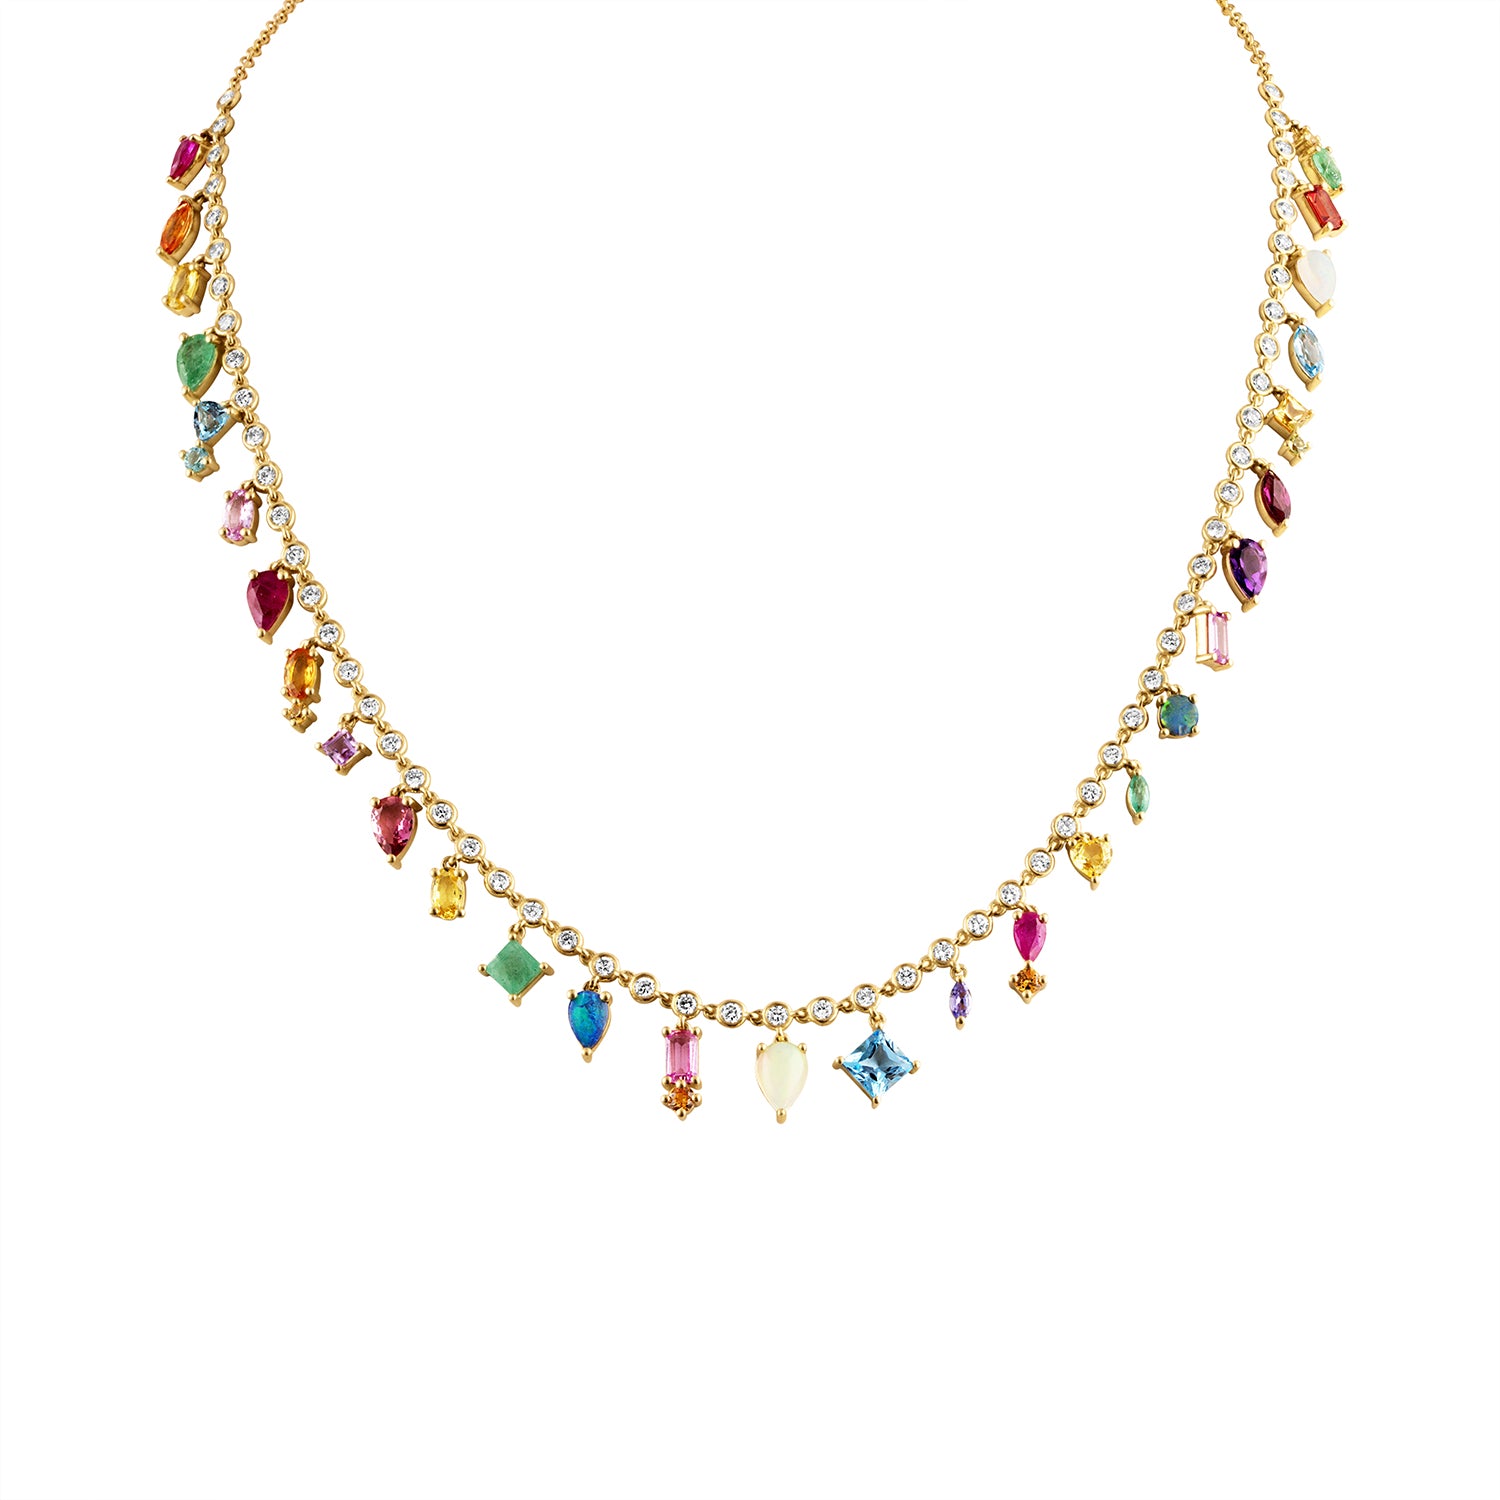 Rainbow Collar Necklace by Eden Presley